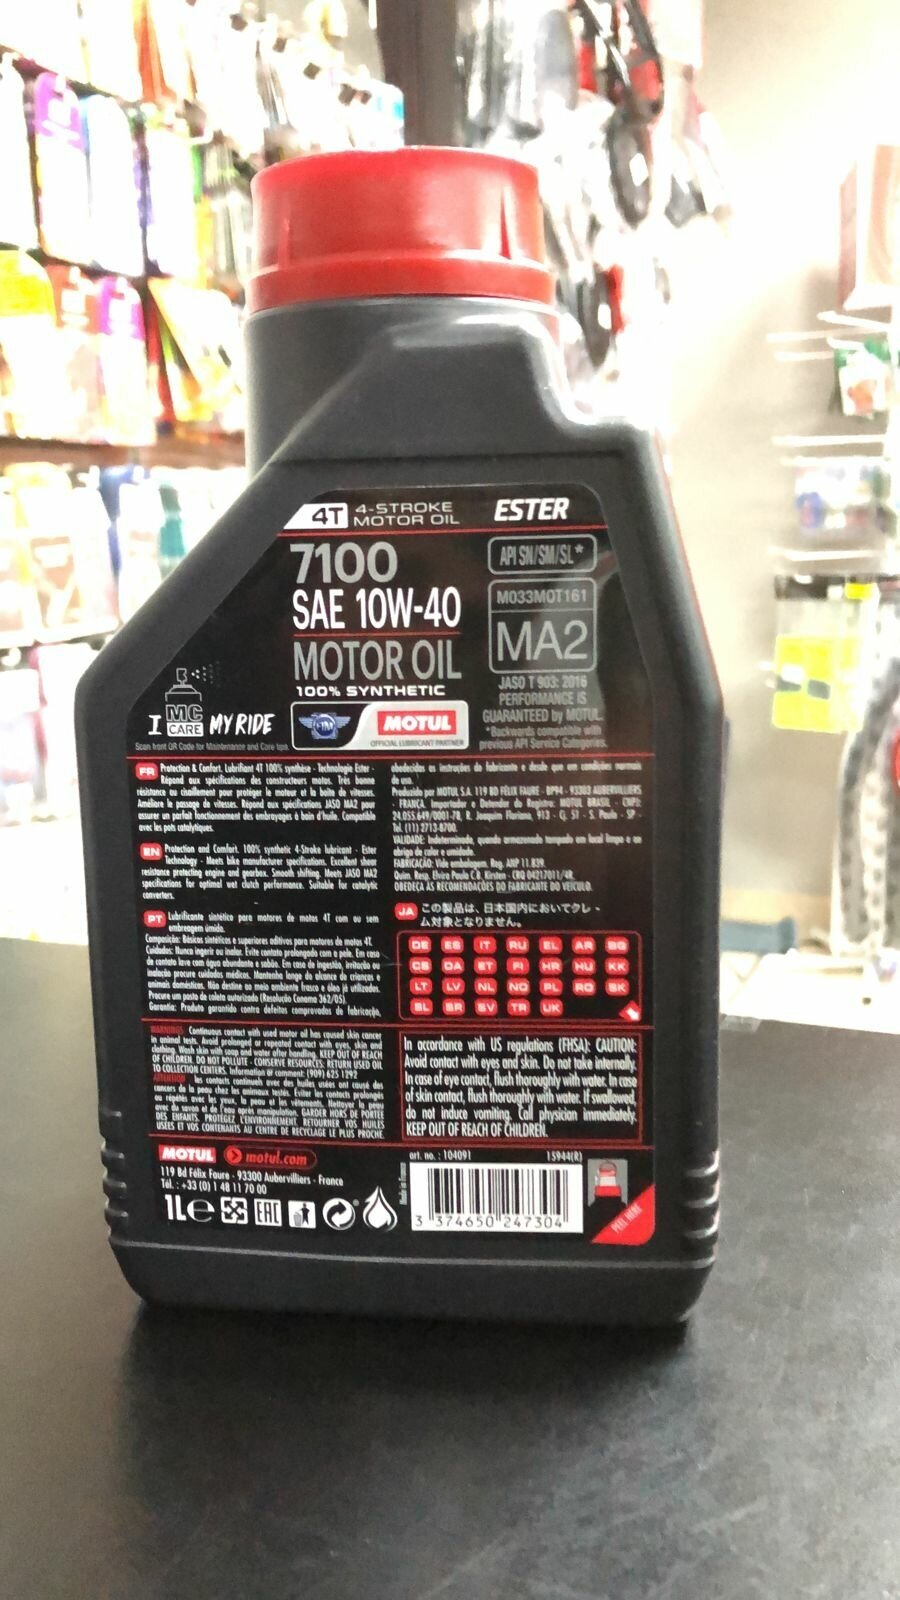 Синтетическое моторное масло Motul 7100 4T 10W40